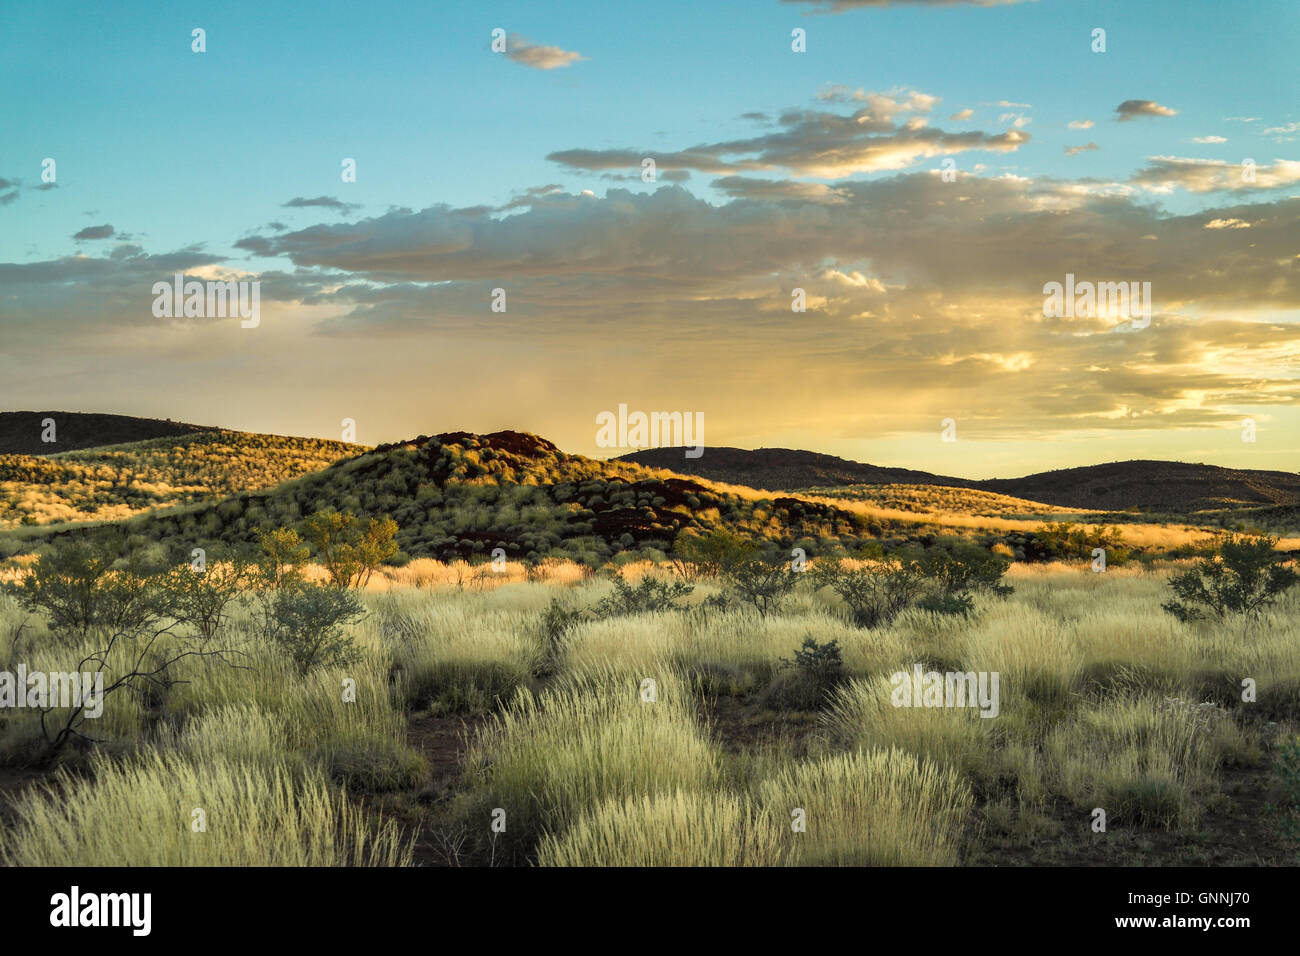 Typische Outback-Landschaft im Bereich von Karijini / Pilbara - Western Australia - Australien Stockfoto